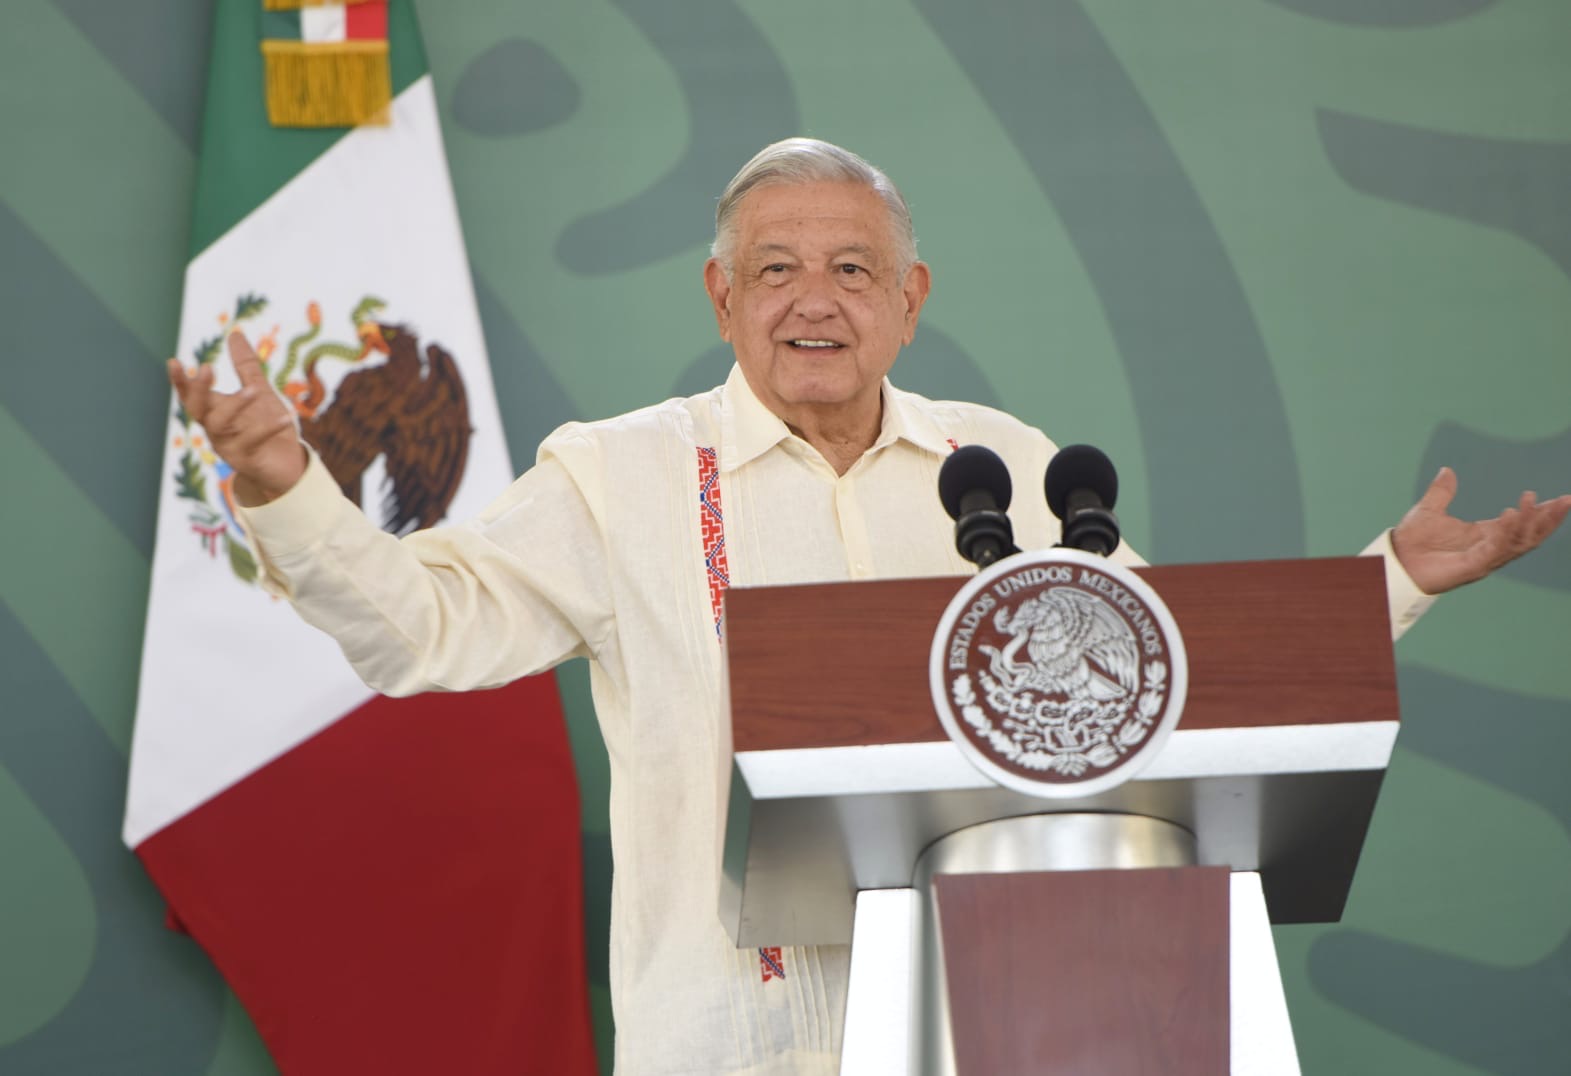 Anuncia López Obrador la creación del programa de salud "La Clínica es Nuestra" en 23 estados